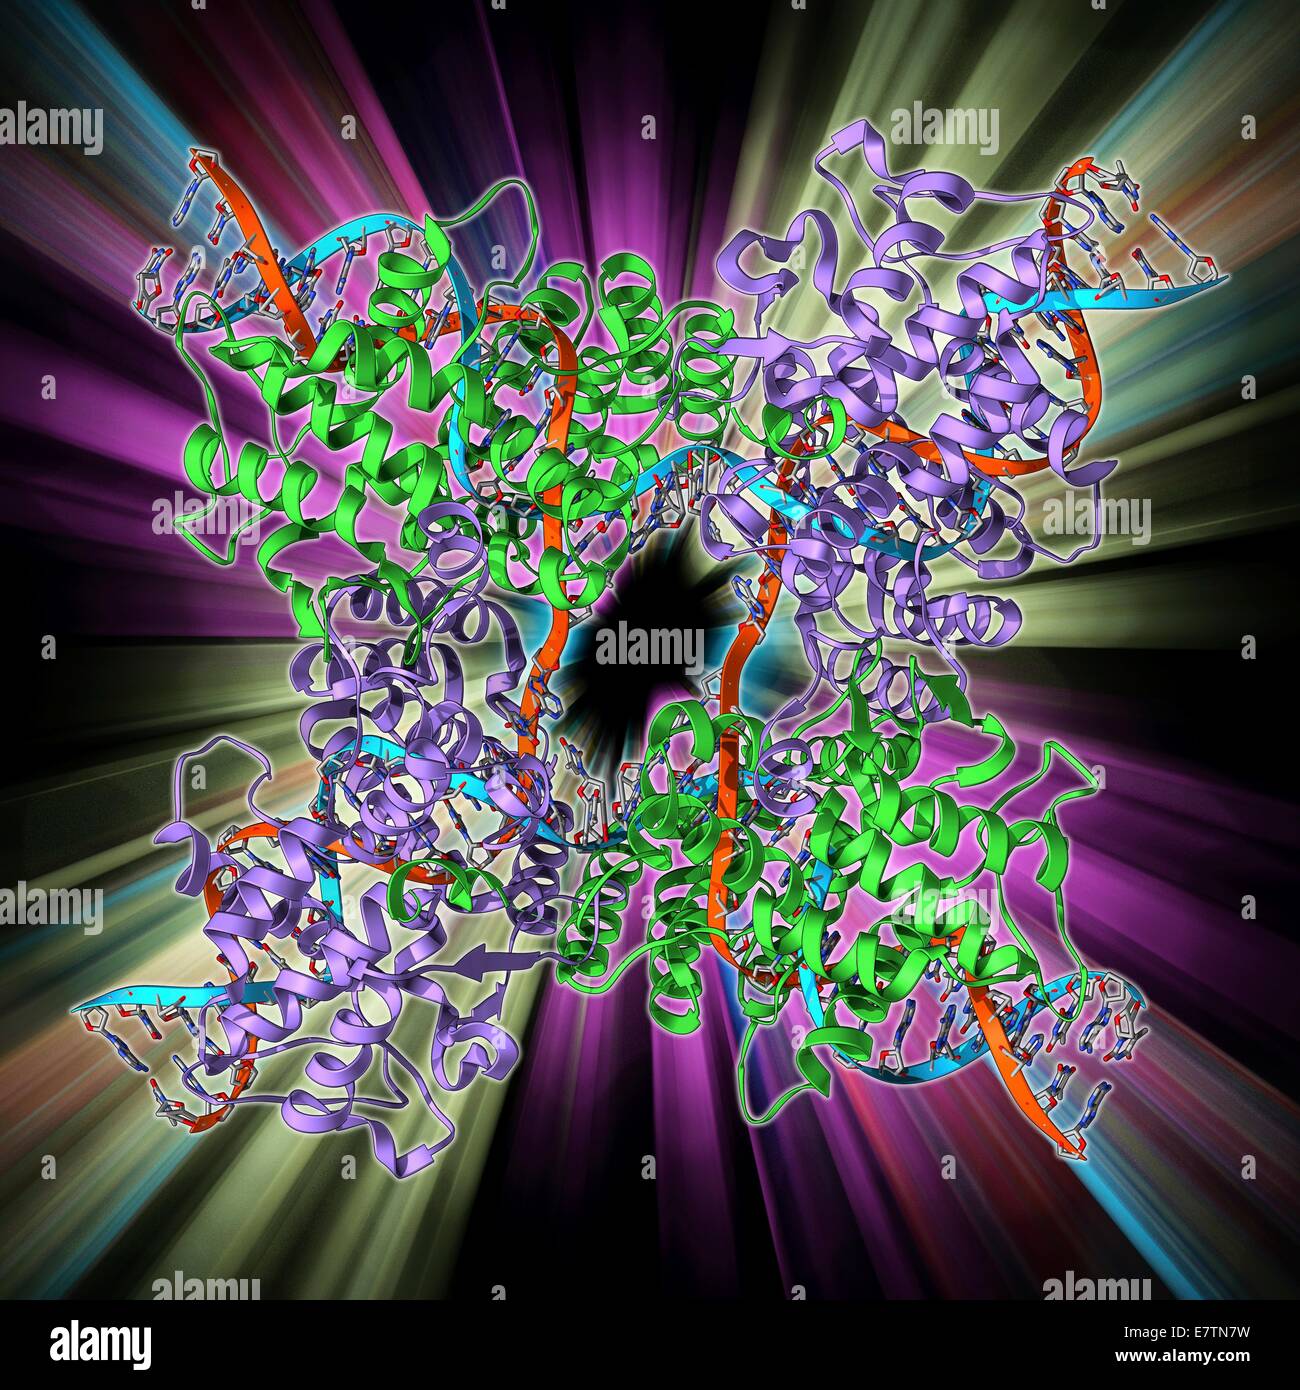 Enzym katalysierende DNA Rekombination. Molekulares Modell des Enzyms CRE (Biosyntheseschritt Rekombination) Rekombinase (grün und lila) vermitteln die Rekombination der Stränge der DNA (Desoxyribonukleinsäure, rot und blau) an einer Holliday Verzweigung. Diese recombinatio Stockfoto